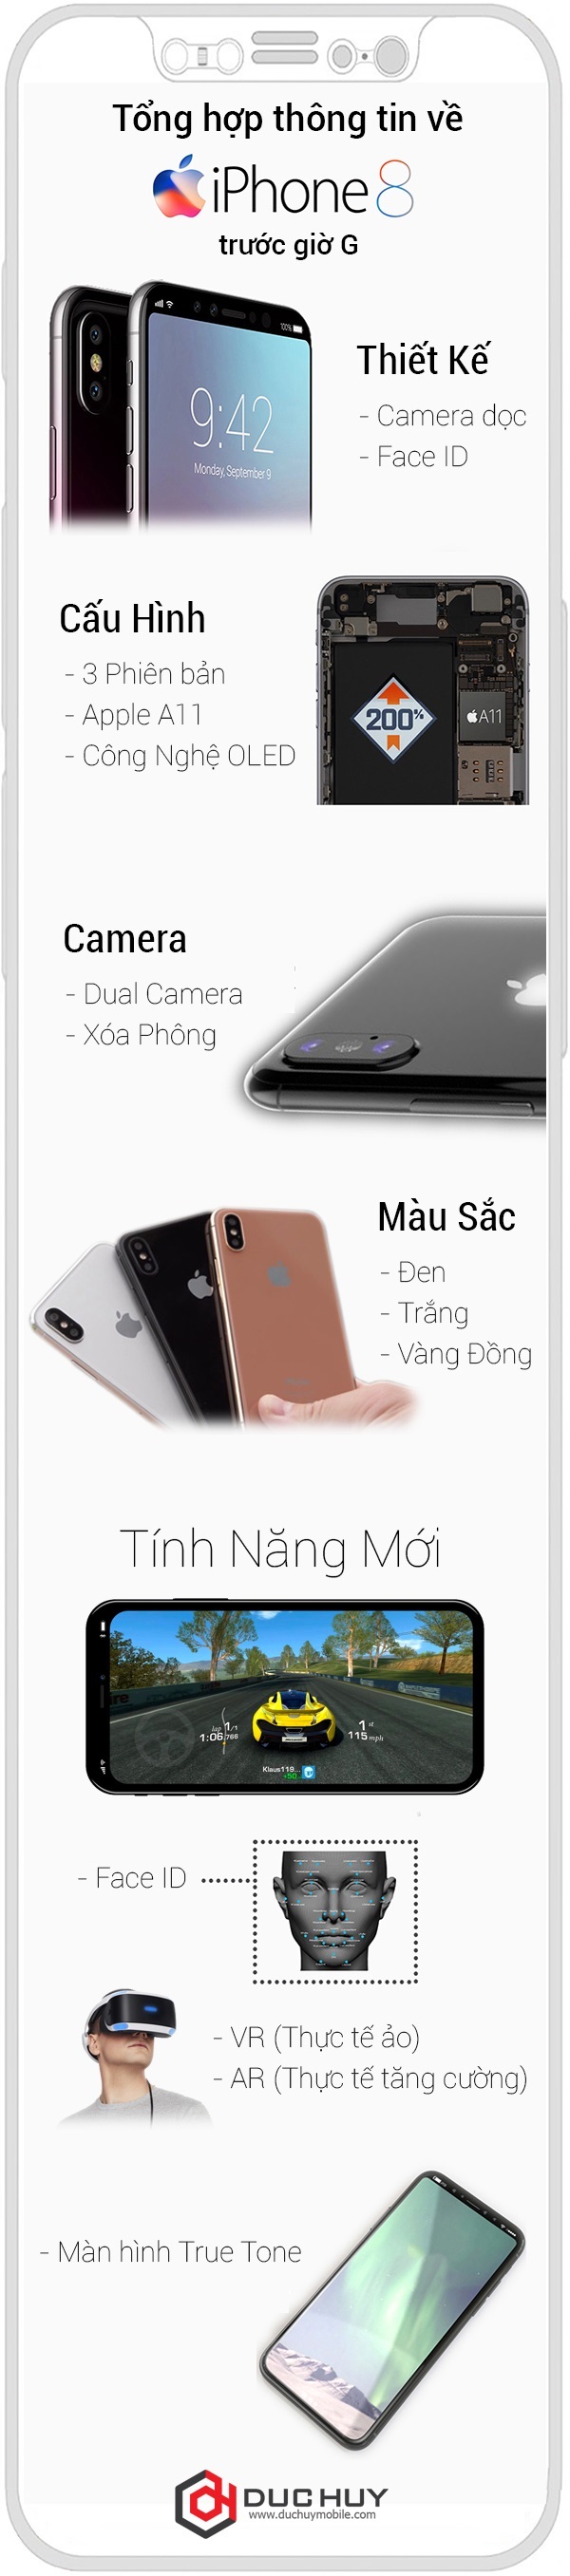 thong-tin-iphone-8-duchuymobile